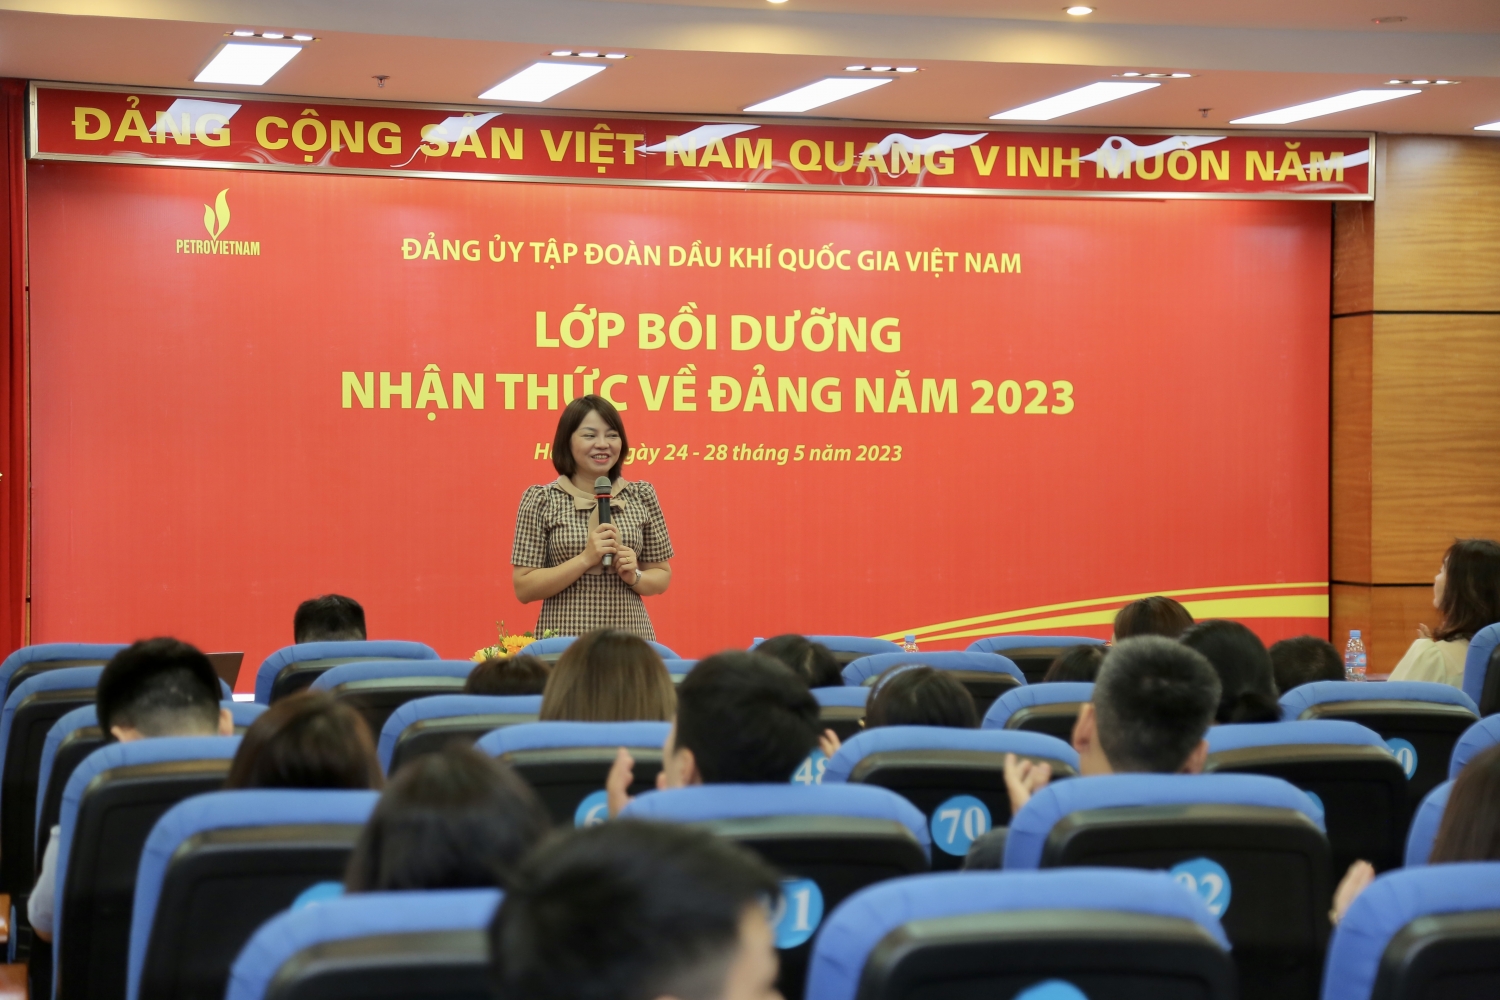 Khai giảng lớp bồi dưỡng nhận thức về Đảng năm 2023 khu vực Hà Nội